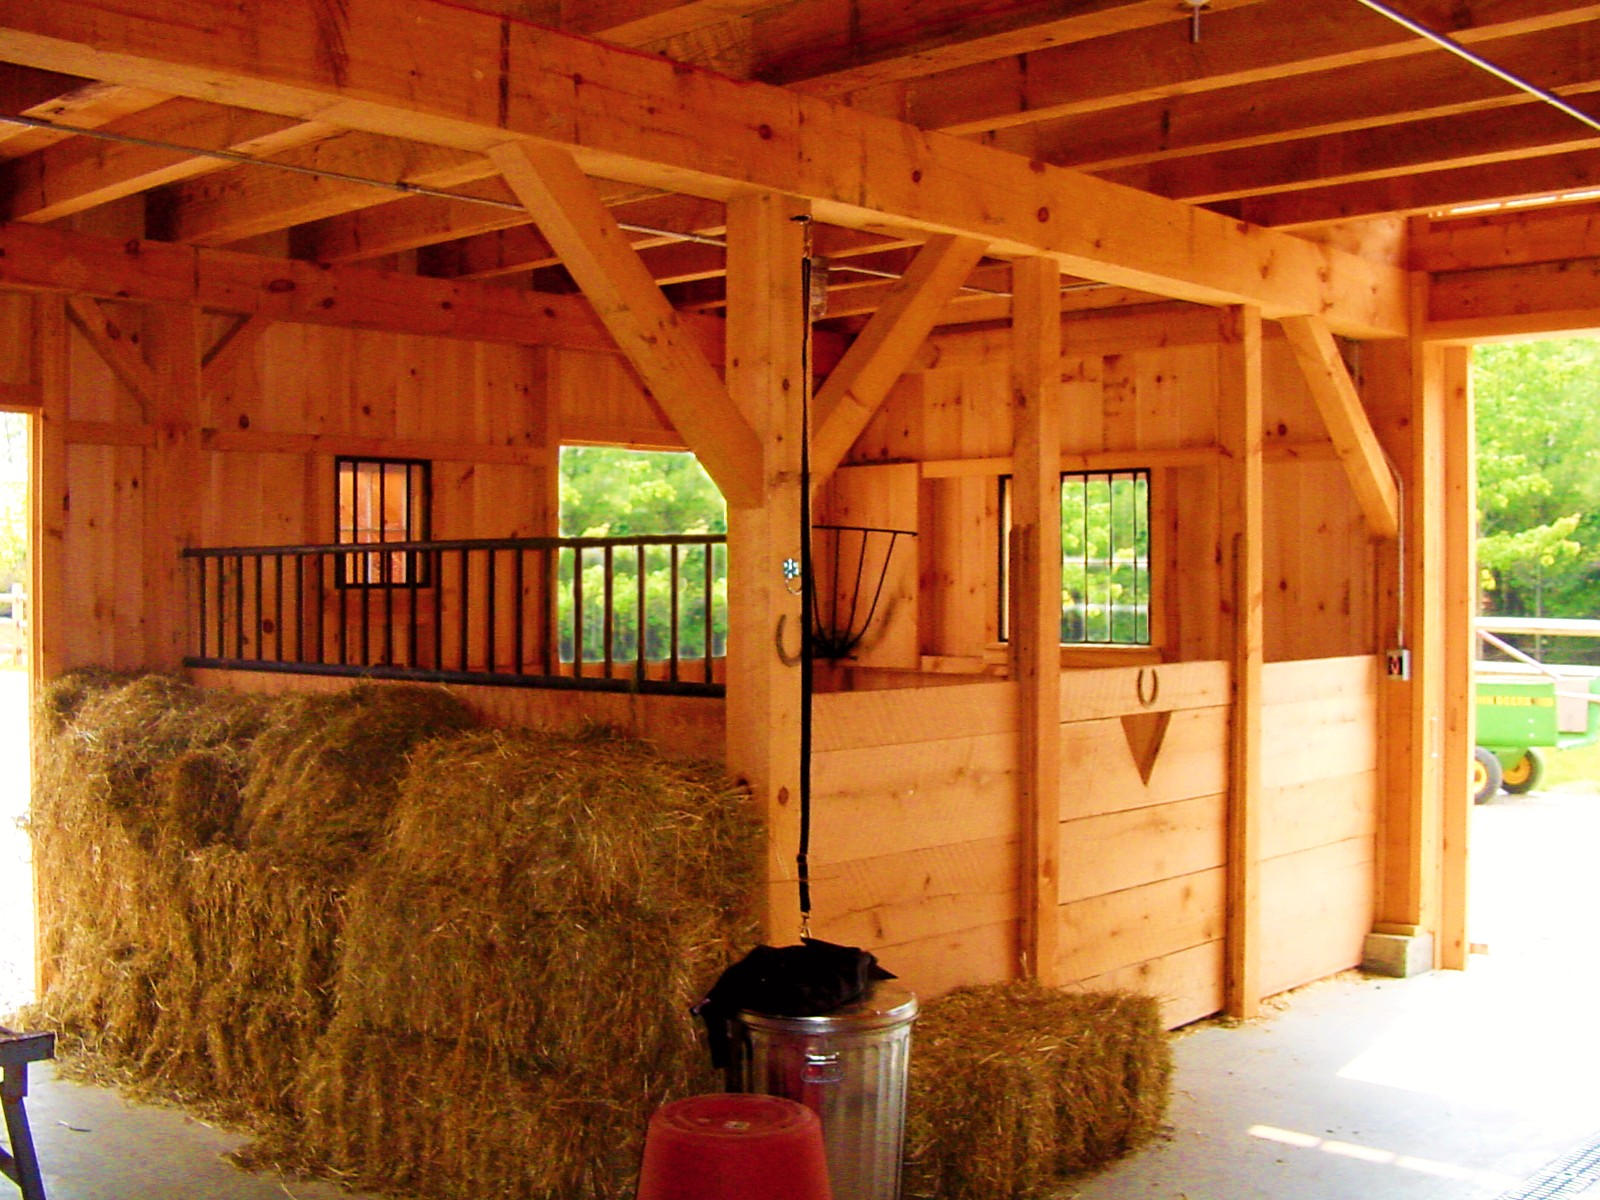 Log Horse Barn  Horse barn ideas stables, Horse barn, Horse barns